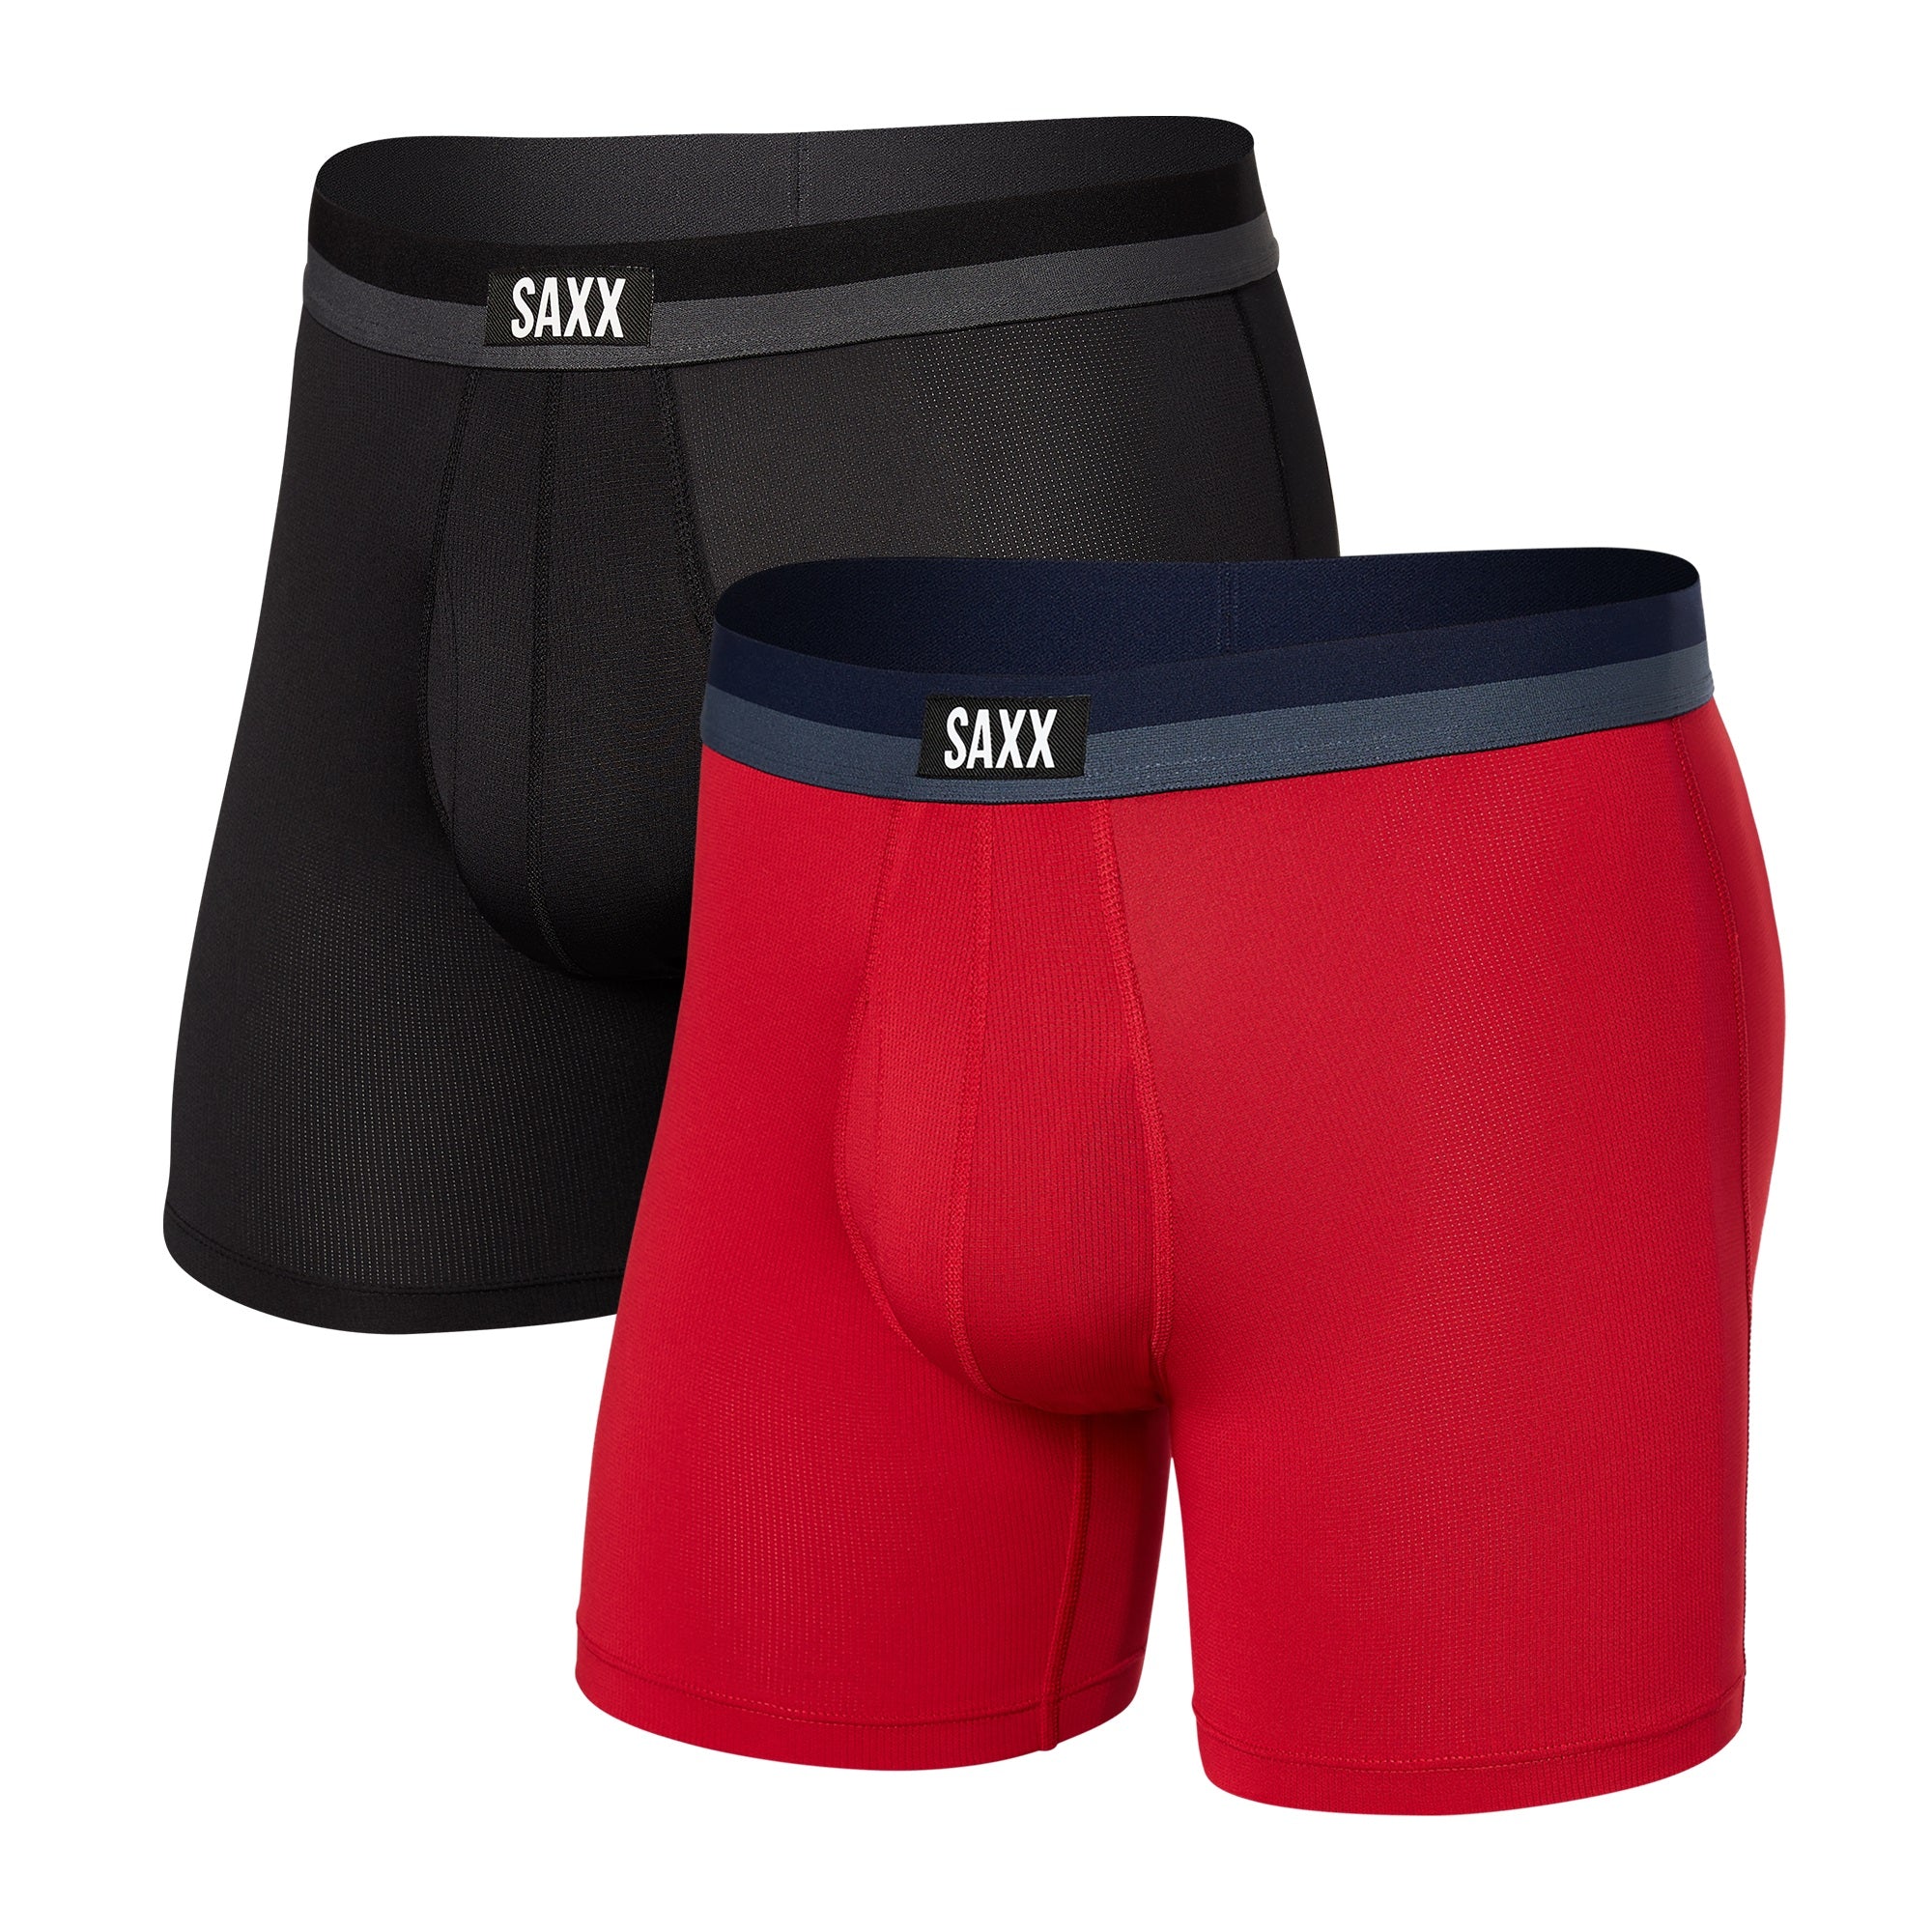 SAXX Digi DNA Sport Mesh 5 Inseam Boxer Briefs 2-Pack